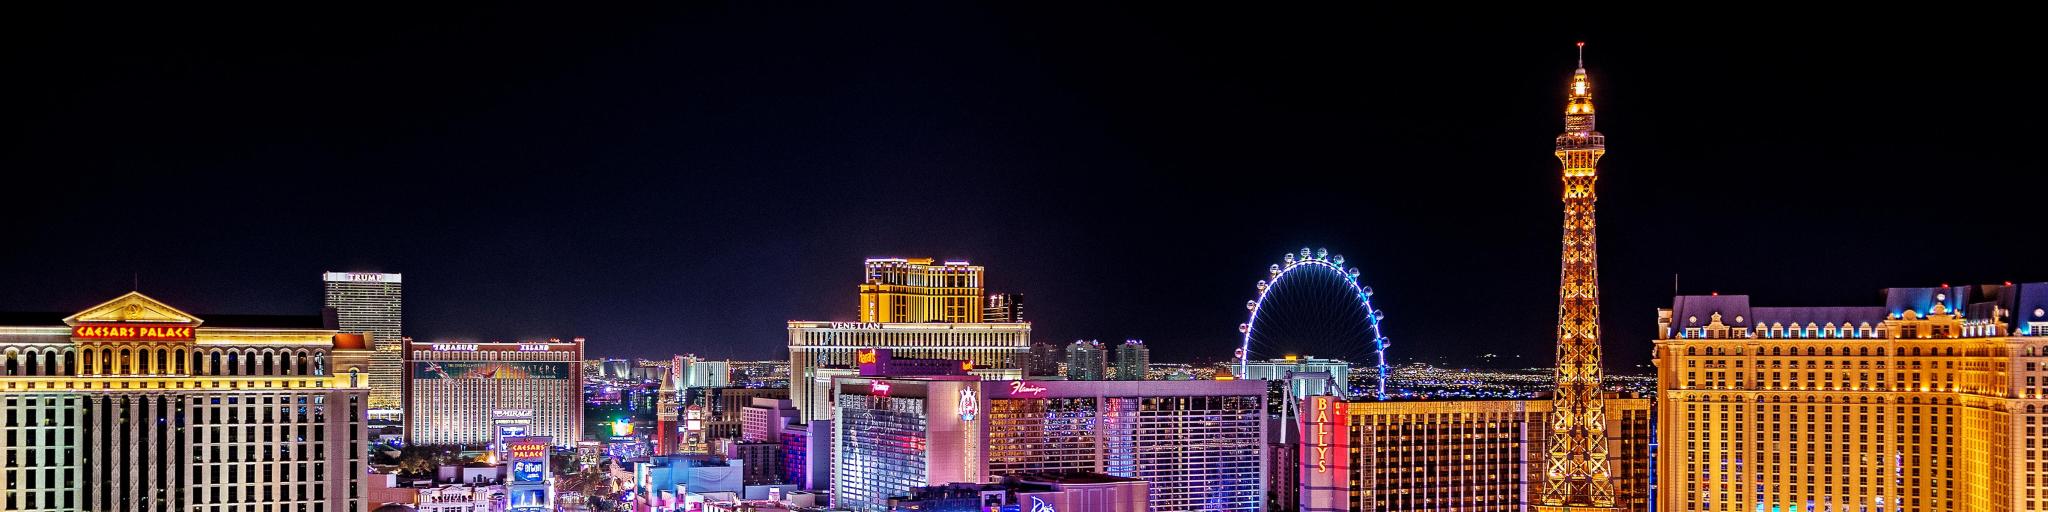 Panoramic view of the Las Vegas Strip, Nevada, at night. 